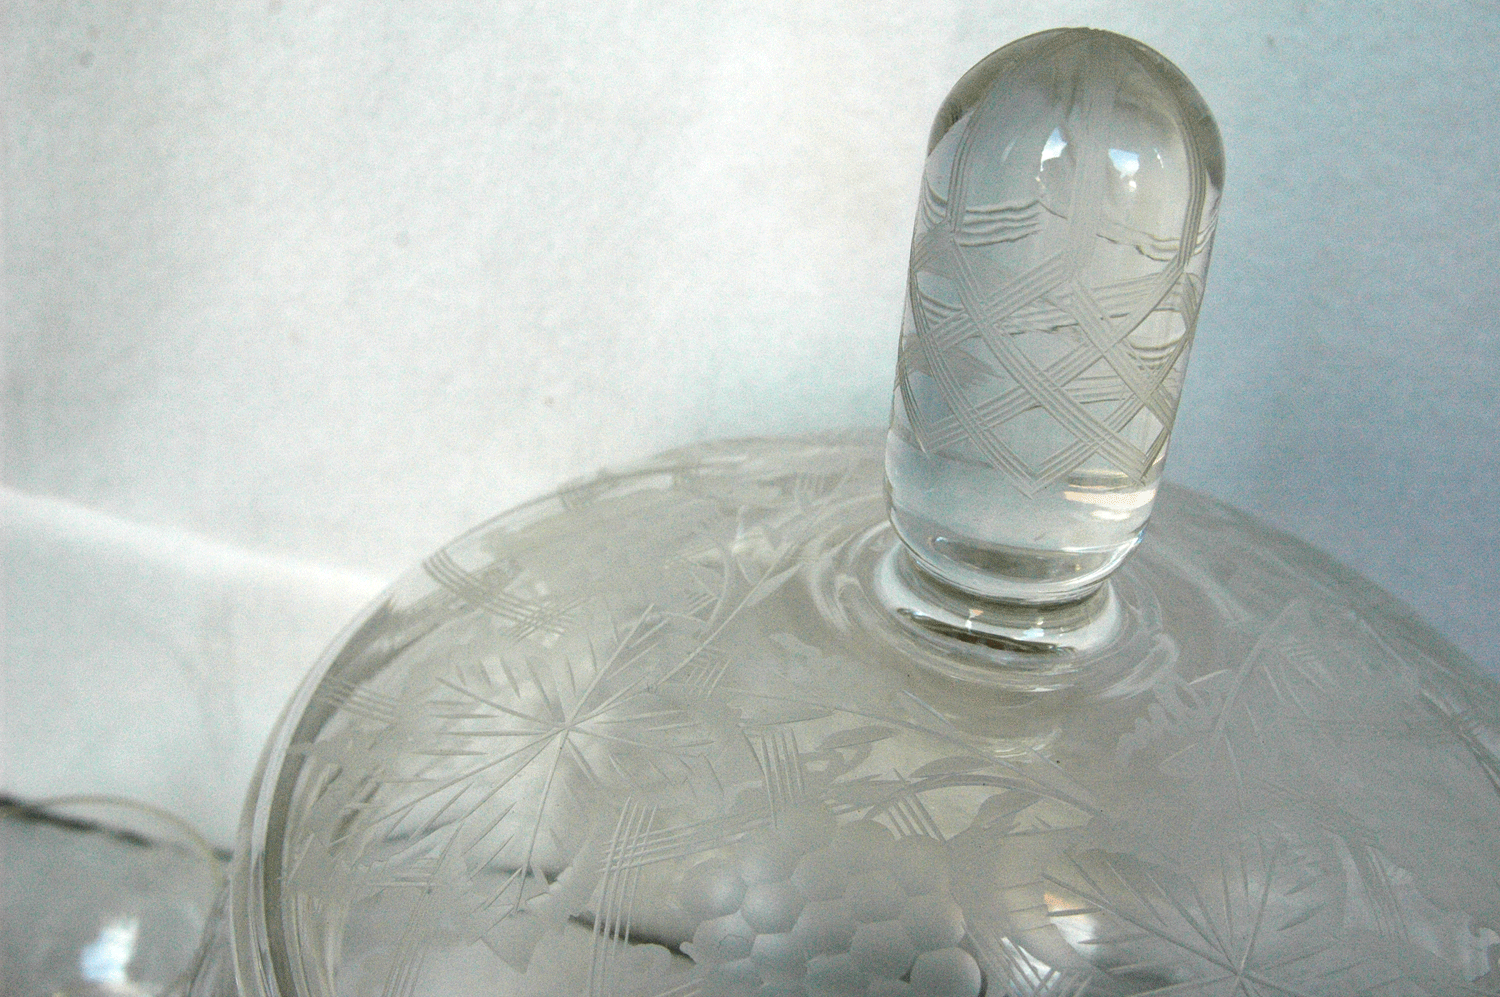 Bowlegefäß, Glas geschliffen, mit 10 Tassen und Glaskelle, kleine Macke - Image 2 of 2